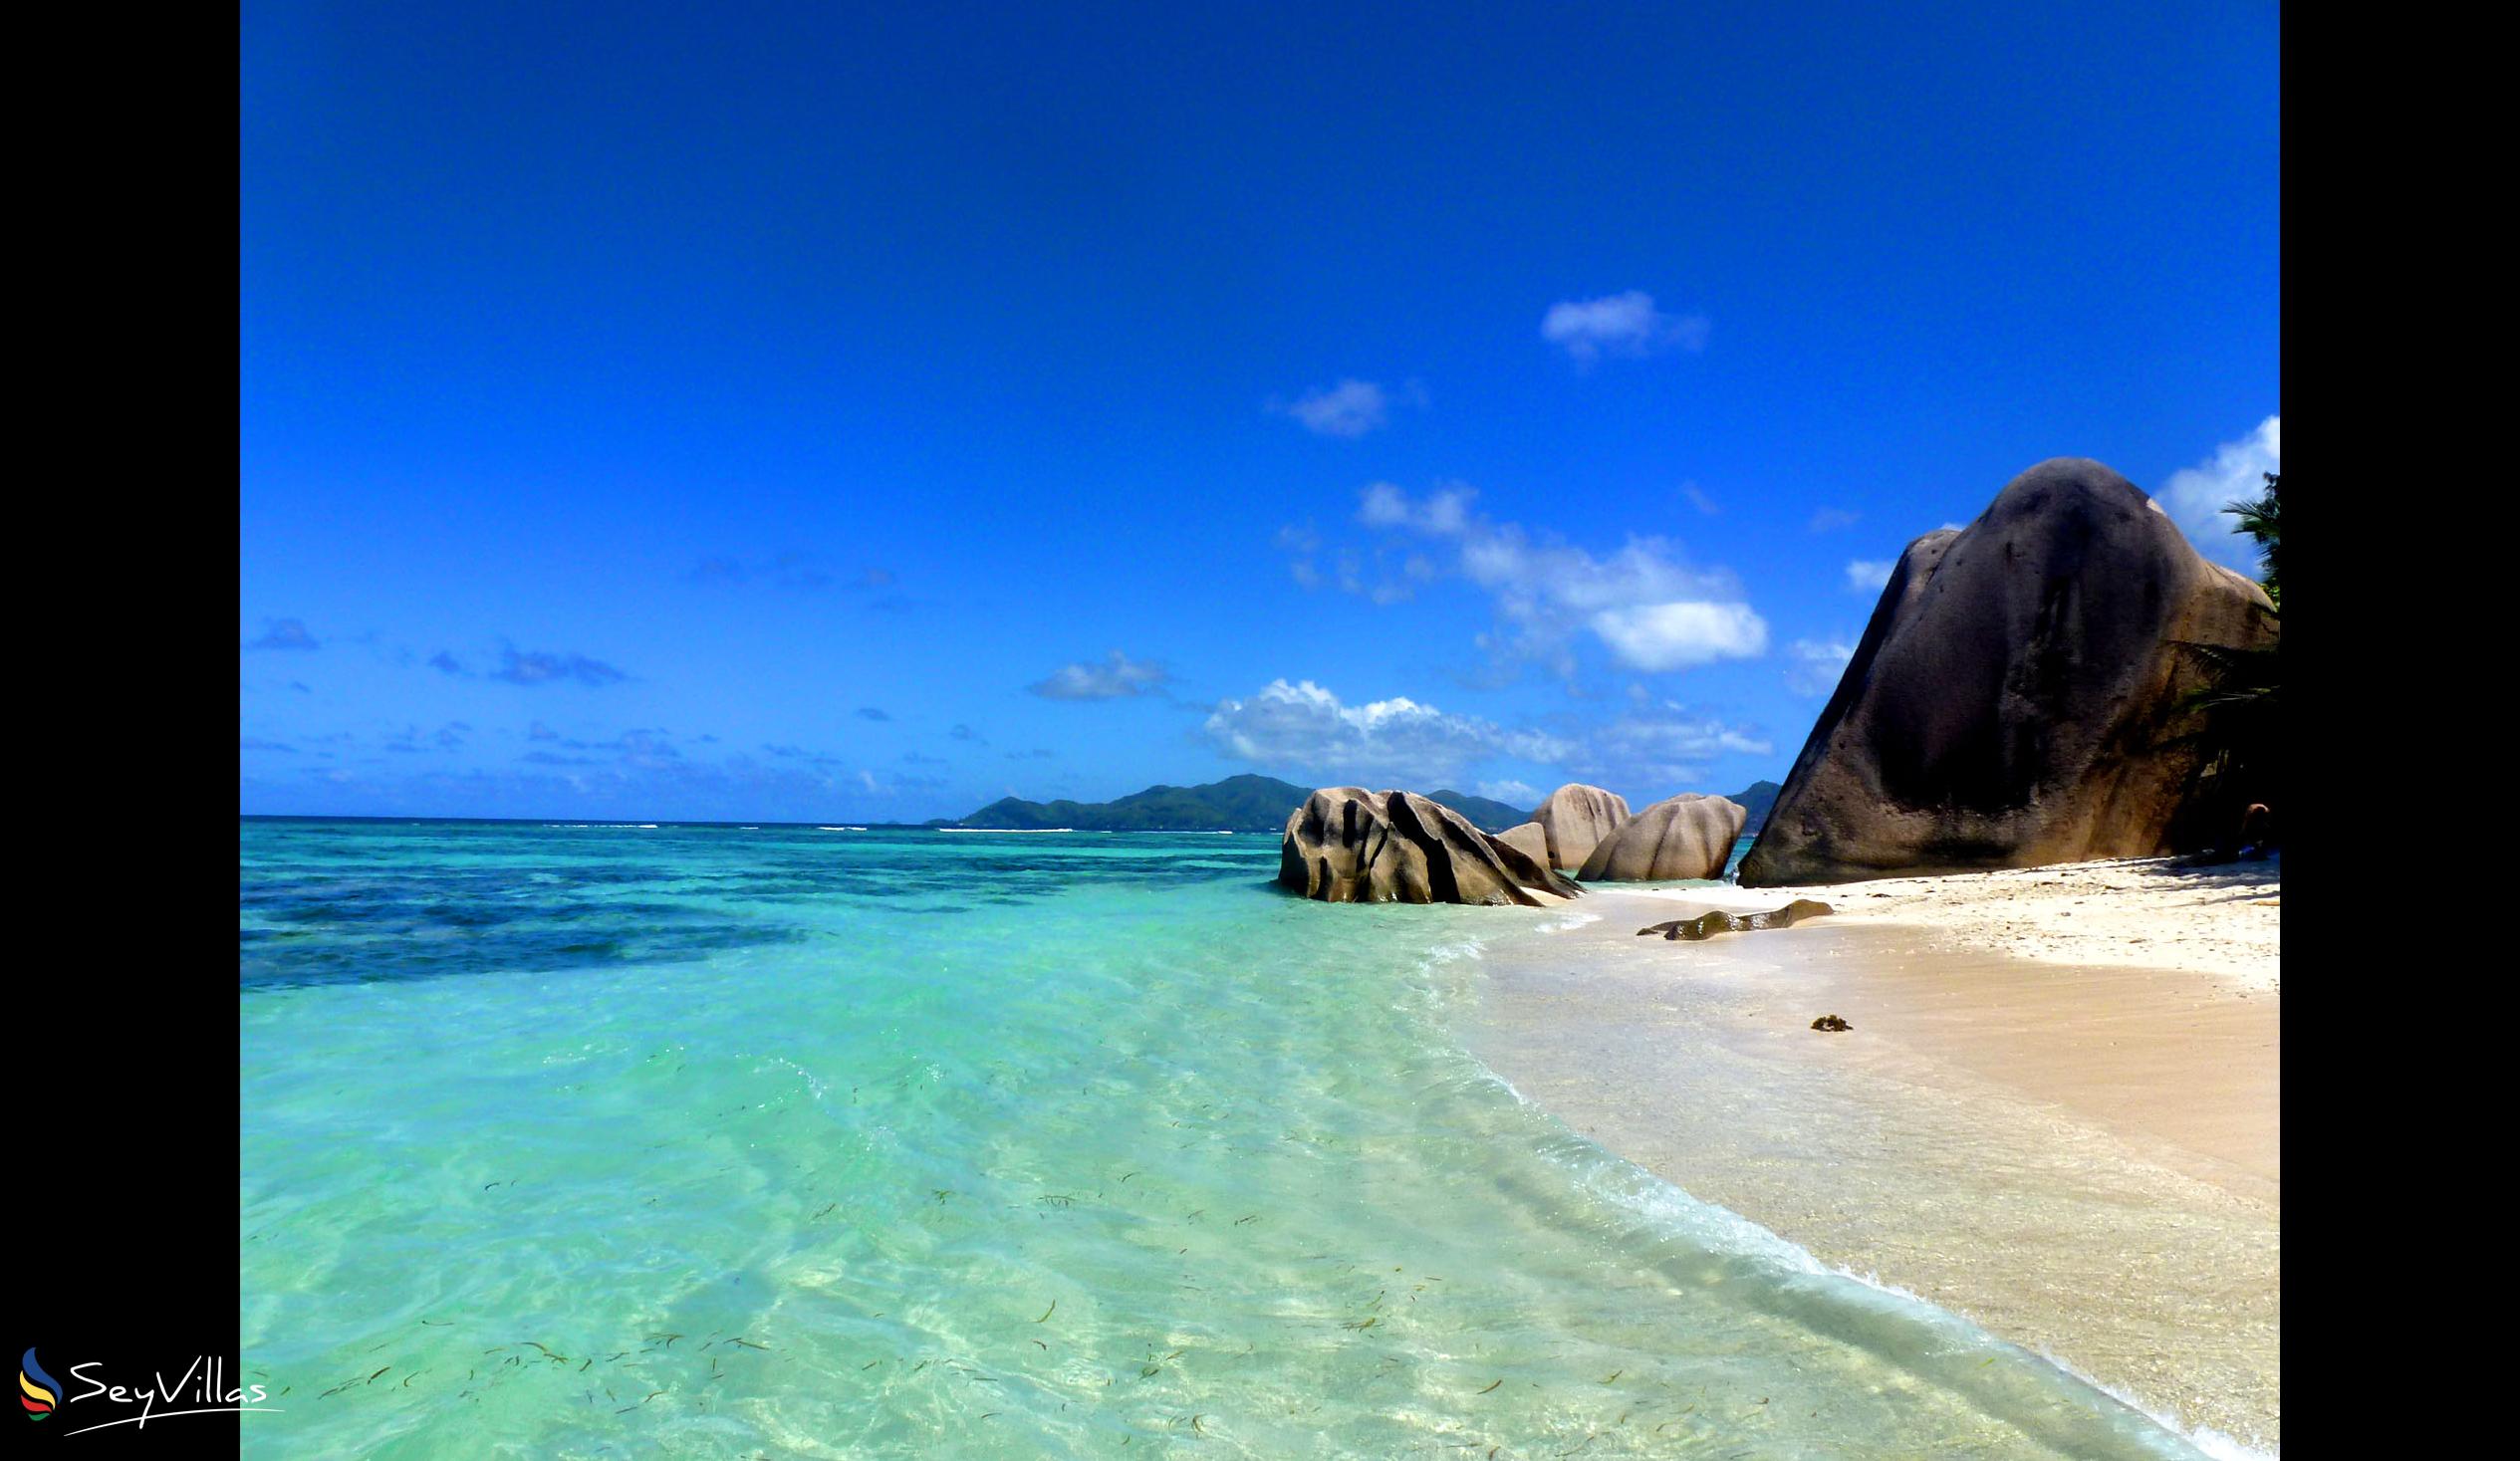 Foto 35: Le Relax Beach House - Spiagge - La Digue (Seychelles)